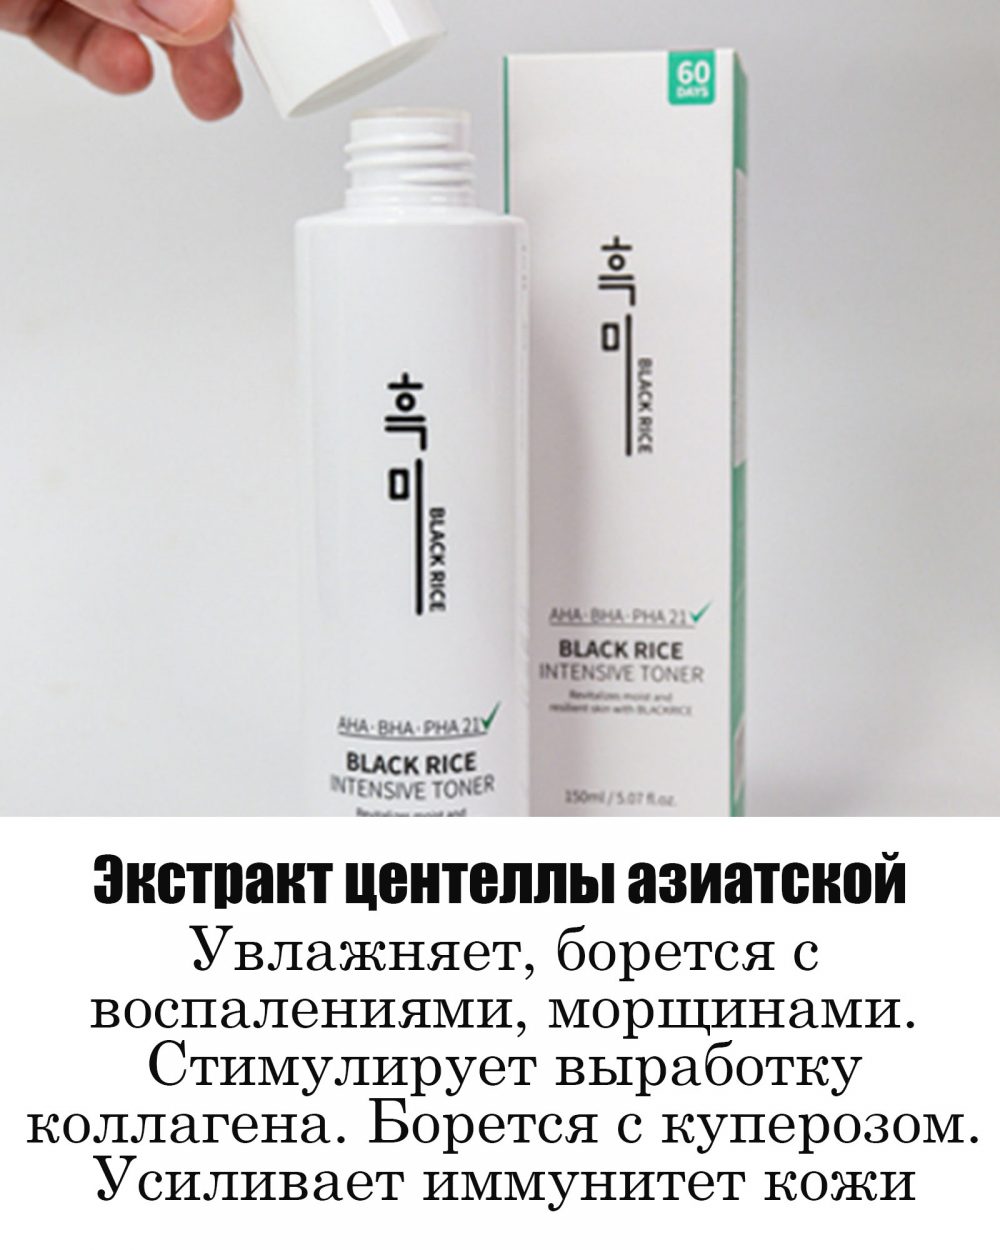 Очищающий тонер для проблемной кожи с экстрактом черного риса Black Rice Intensive Toner (150 ml)